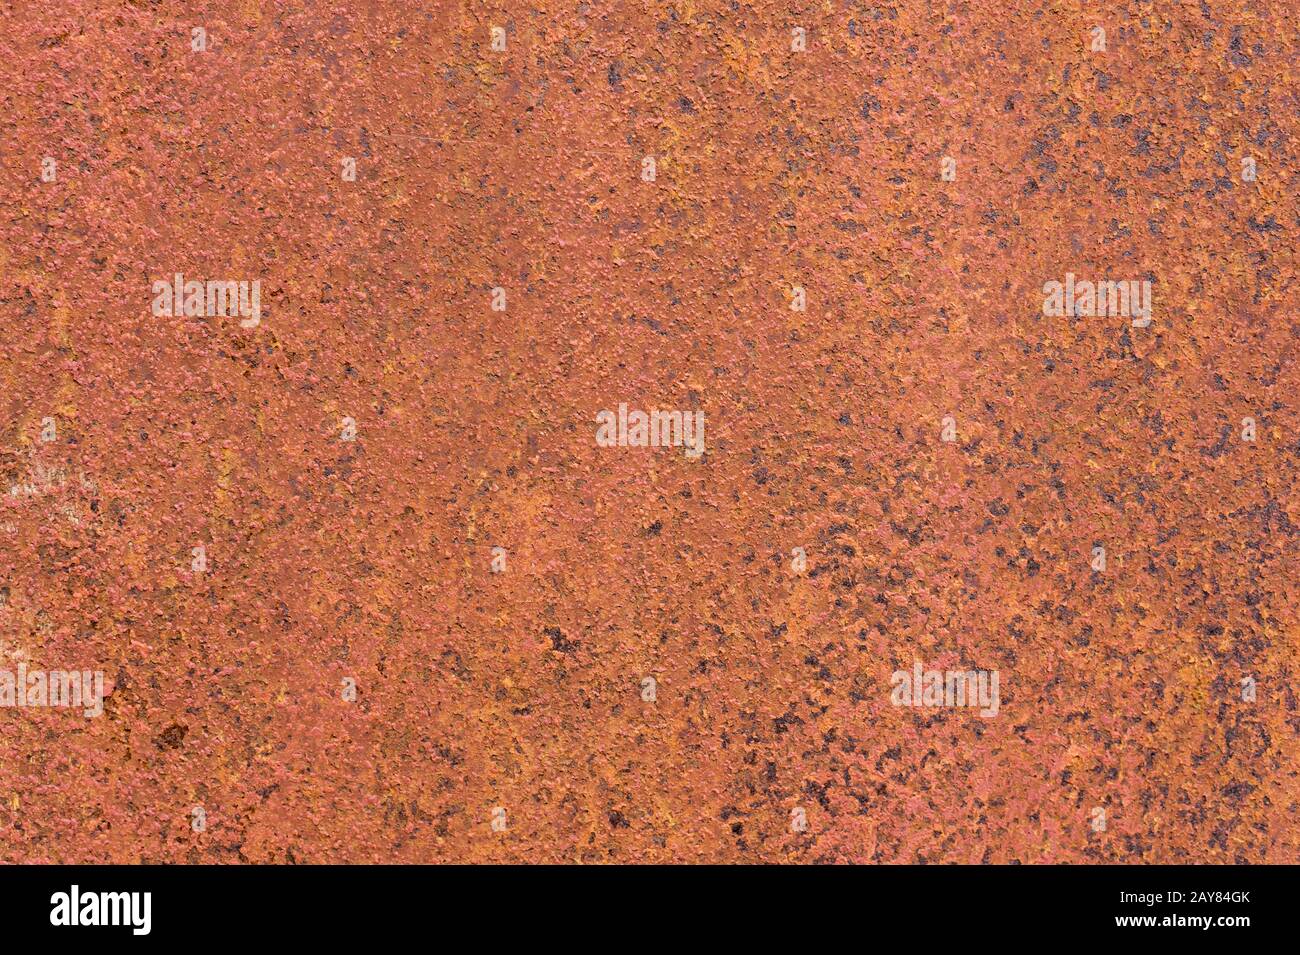 Surface métallique texturée rouillée jaune-rouge. La texture de la tôle est sujette à l'oxydation et à la corrosion. Fond Grunge Banque D'Images